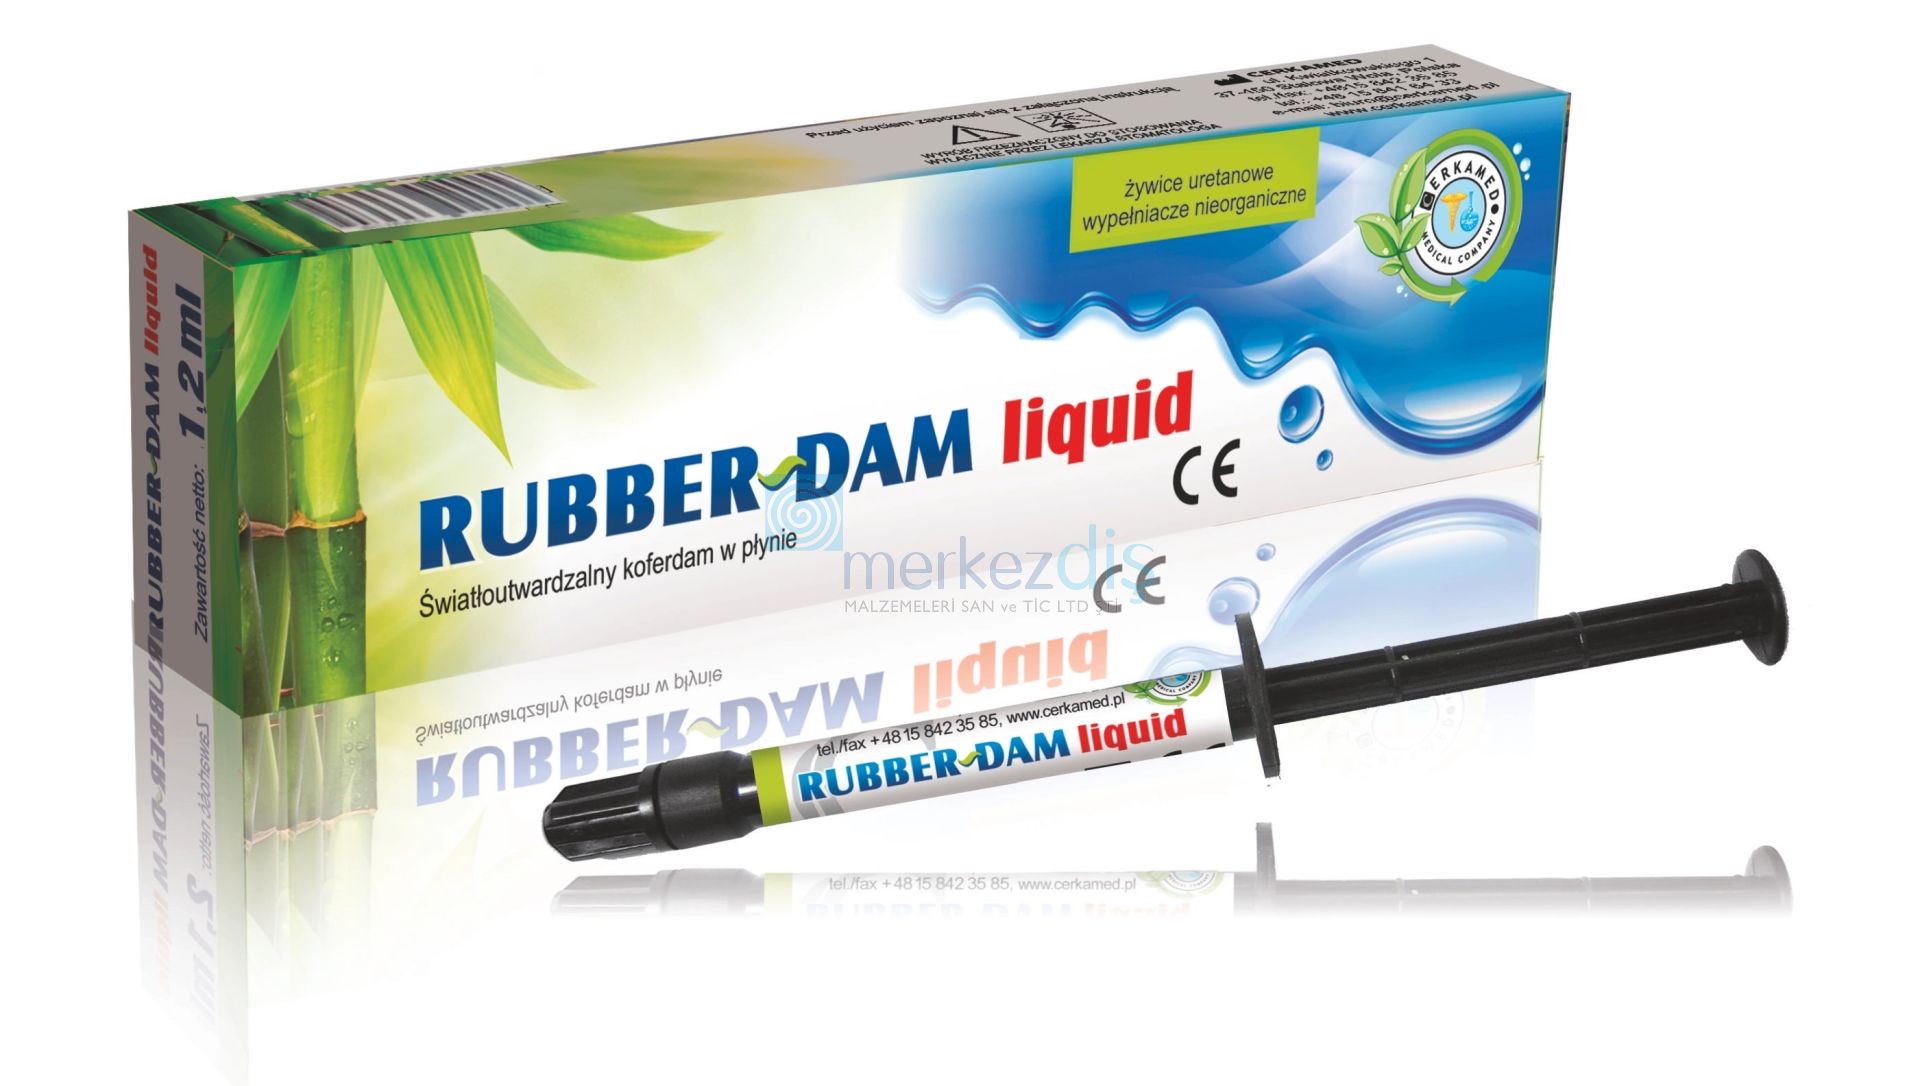 Rubber Dam Liquid